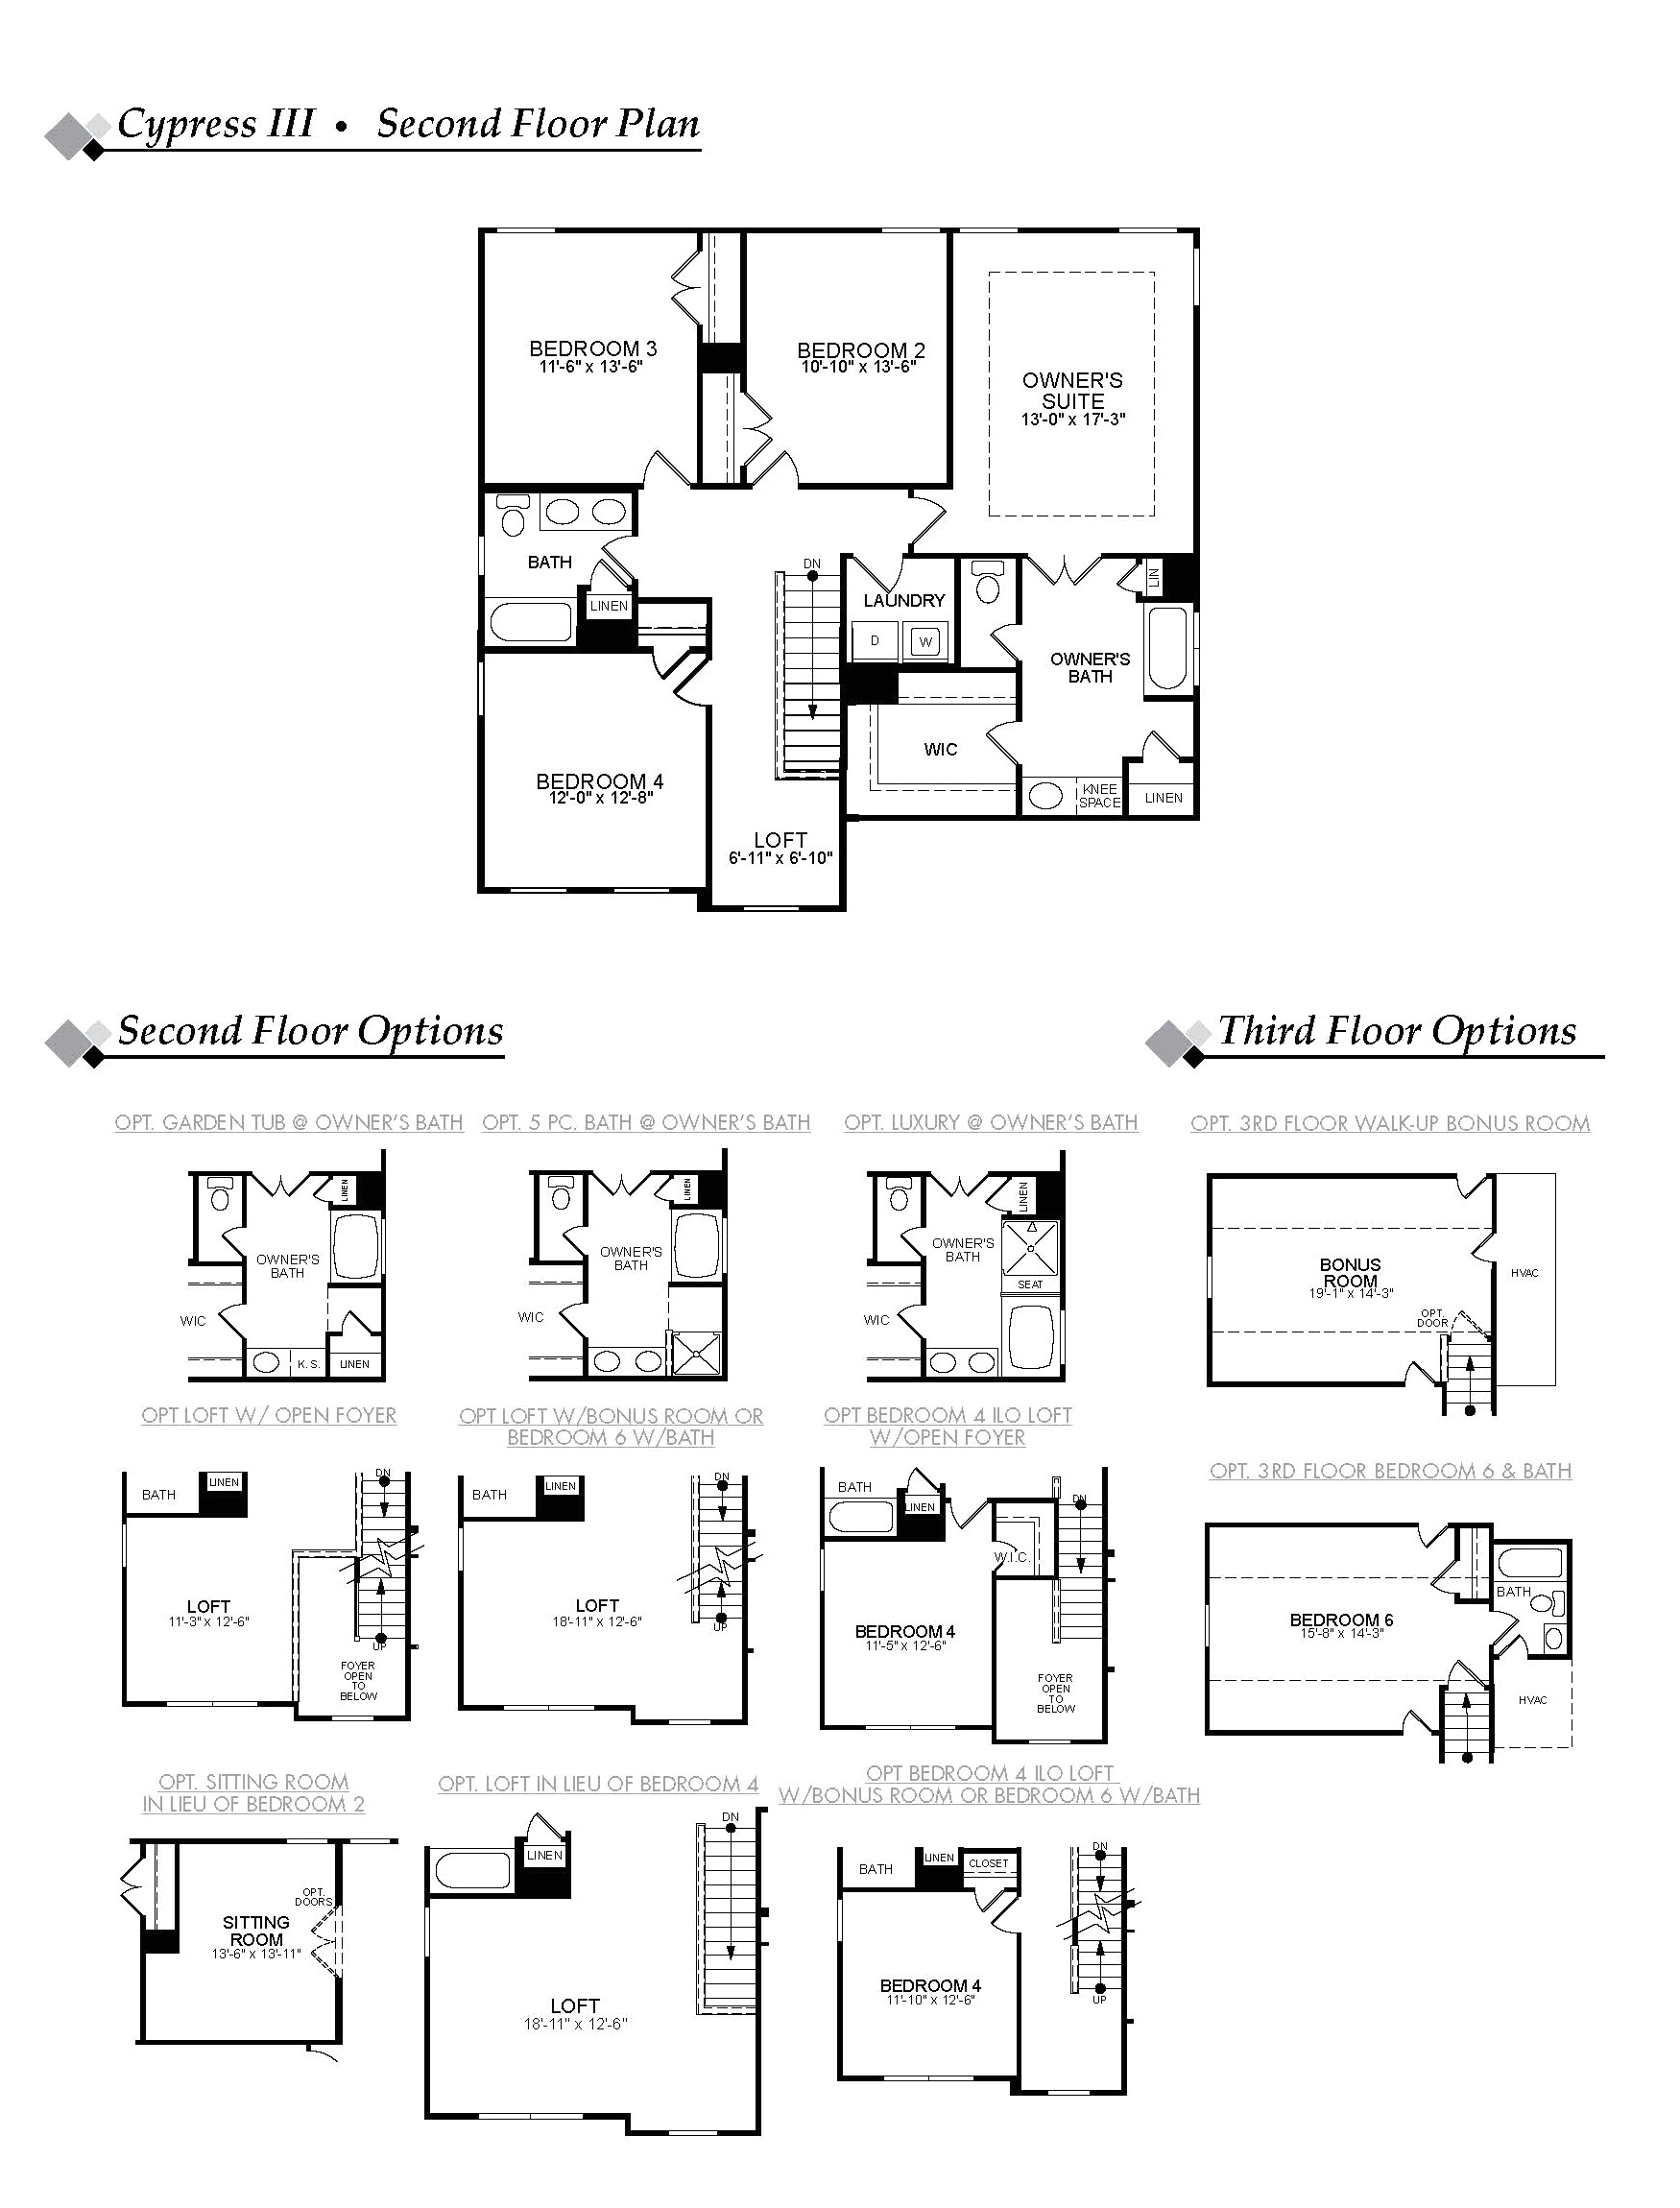 eastwood homes cypress floor plan